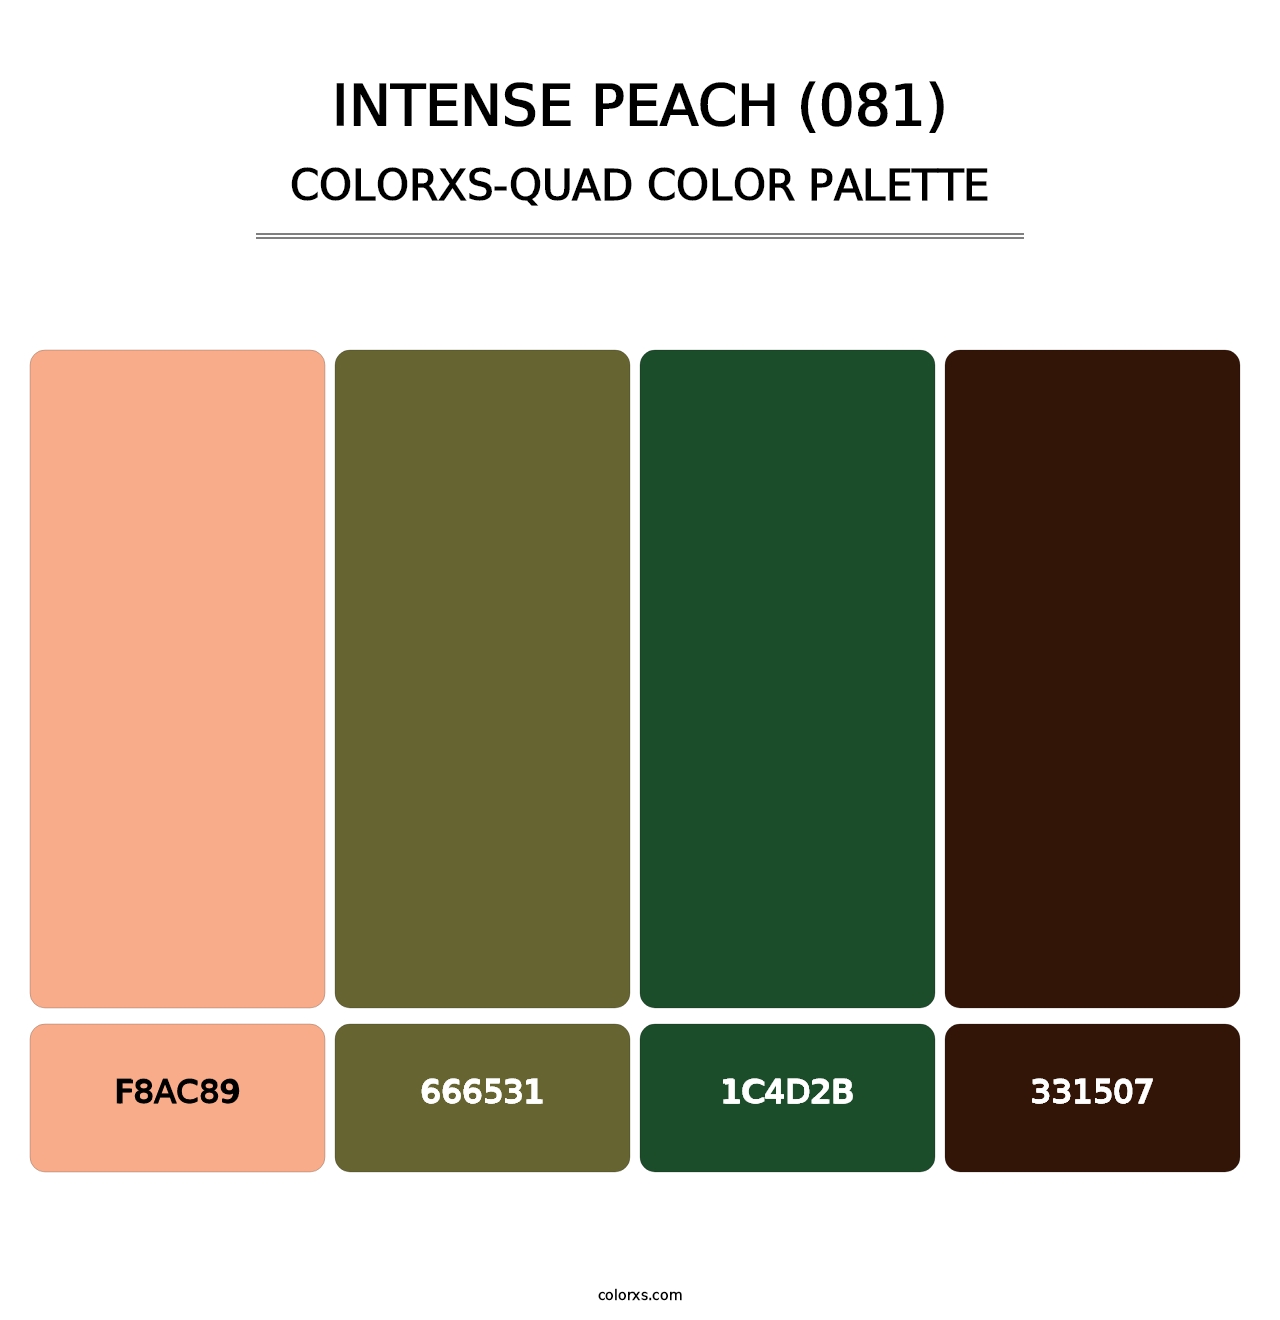 Intense Peach (081) - Colorxs Quad Palette